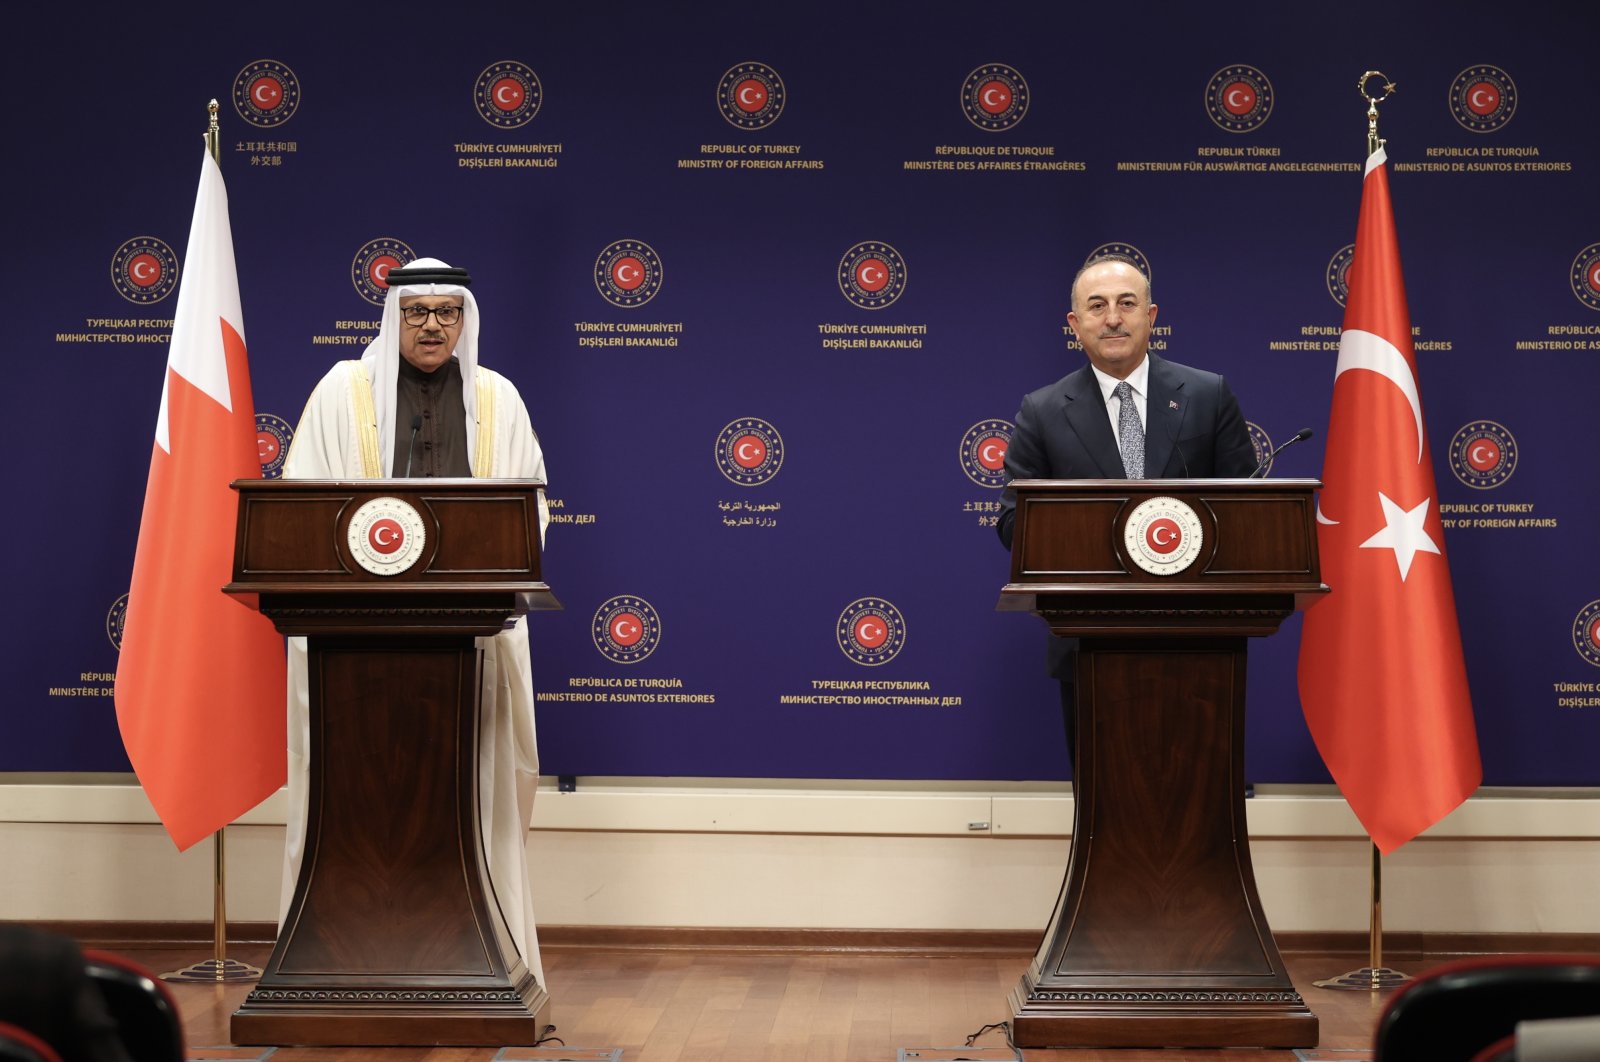 Serangan Armenia terhadap Azerbaijan adalah tindakan teroris: FM avuşoğlu